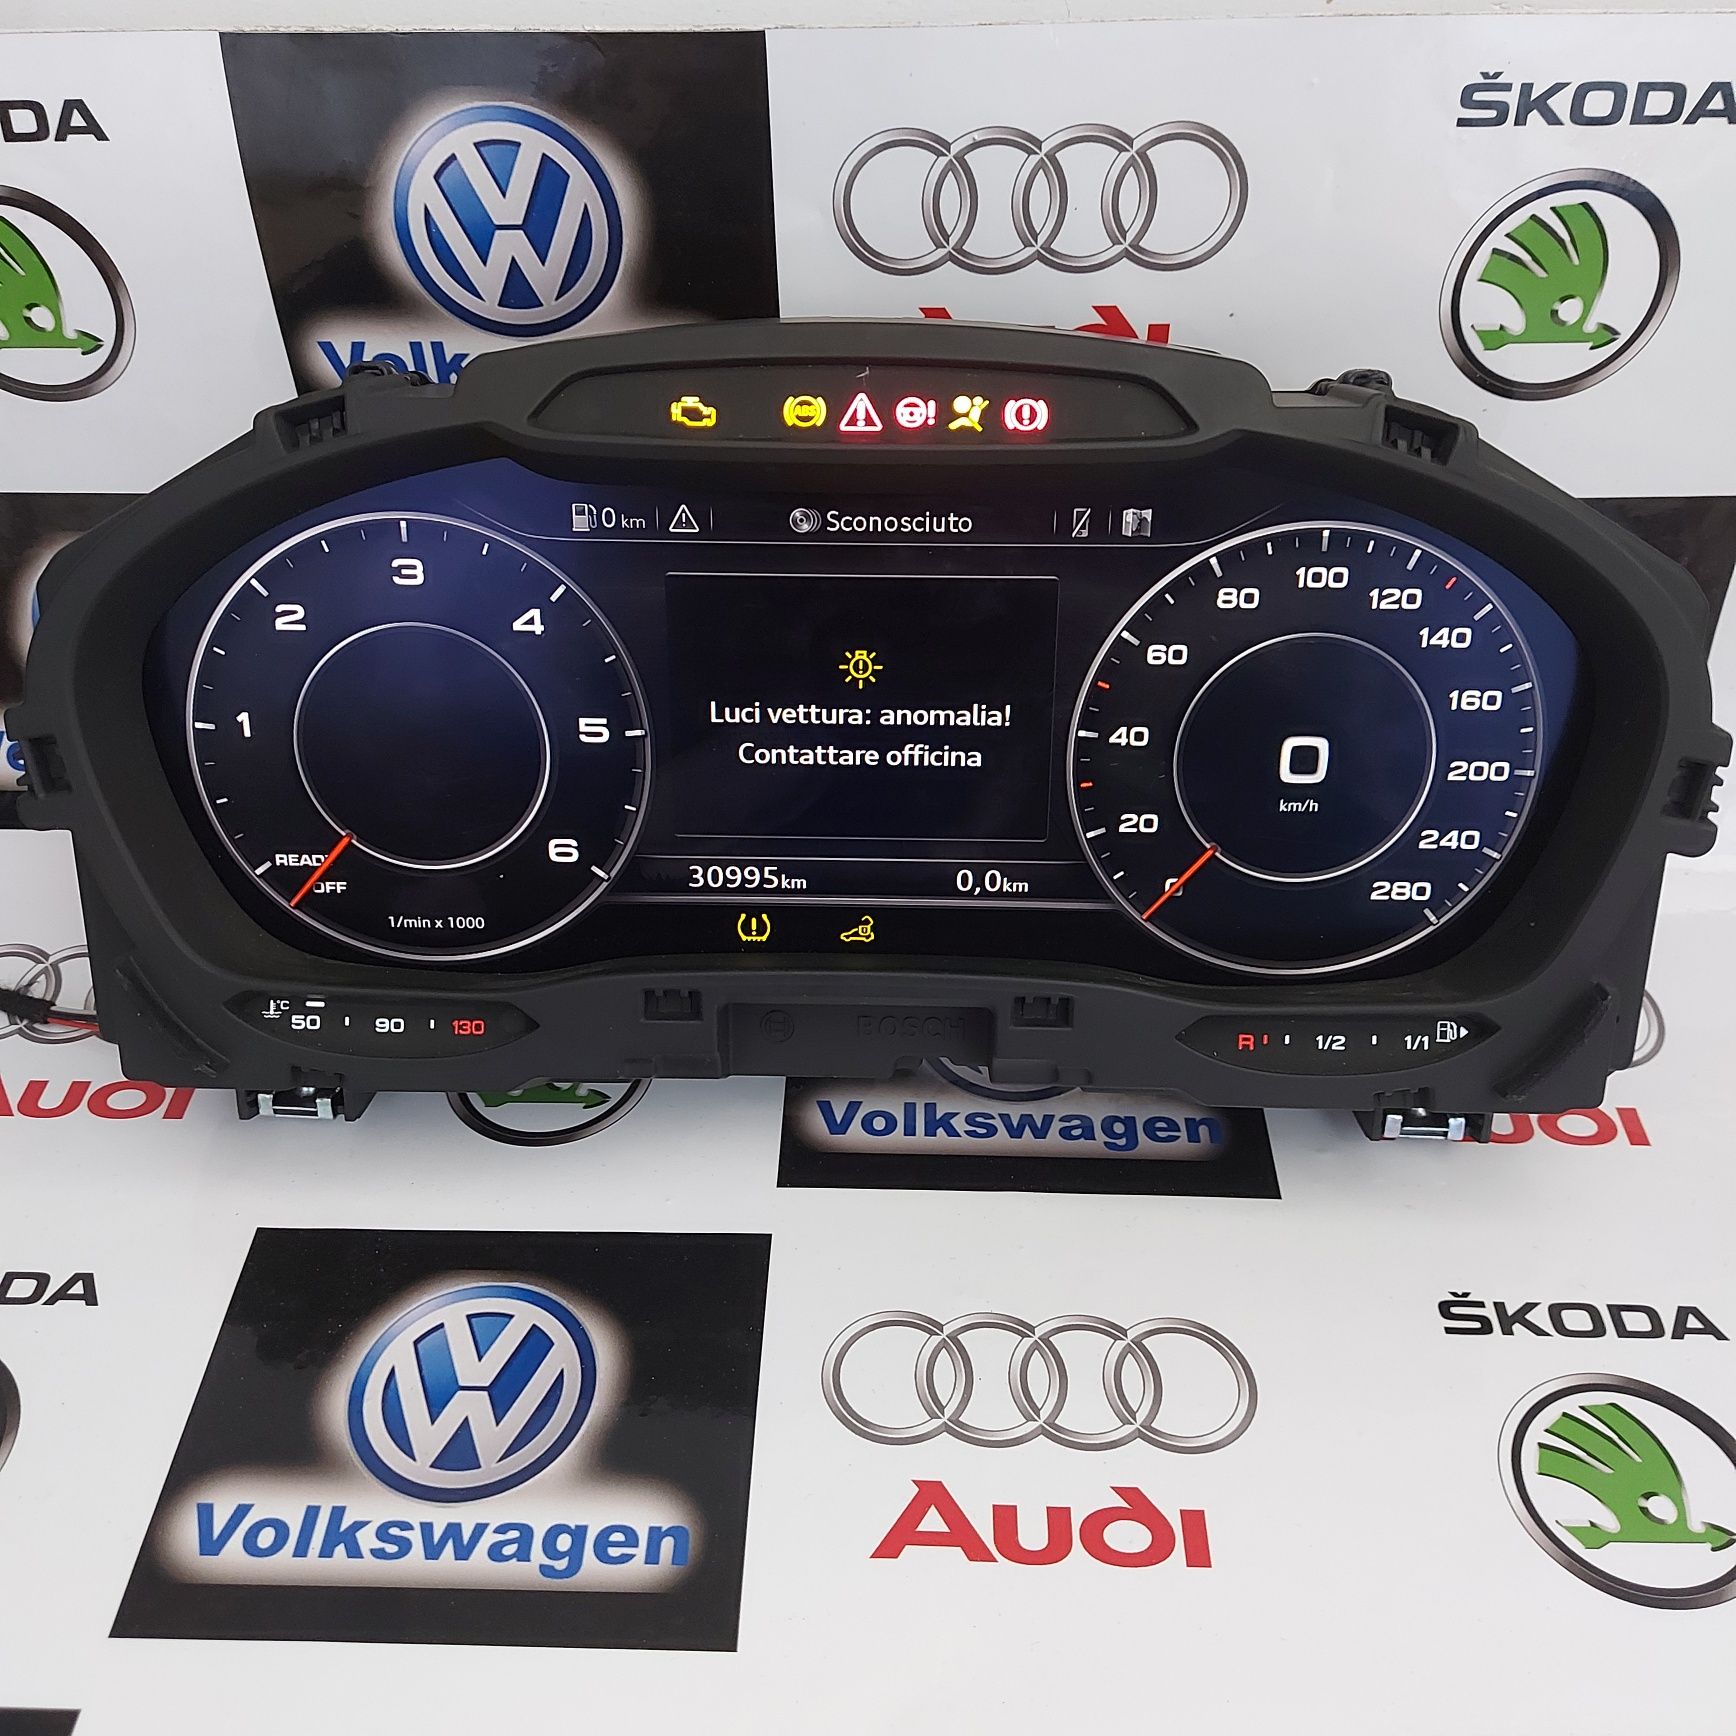 Ceasuri bord plasma digitale Audi A3 8v 2016+
Produs Original AUDI din